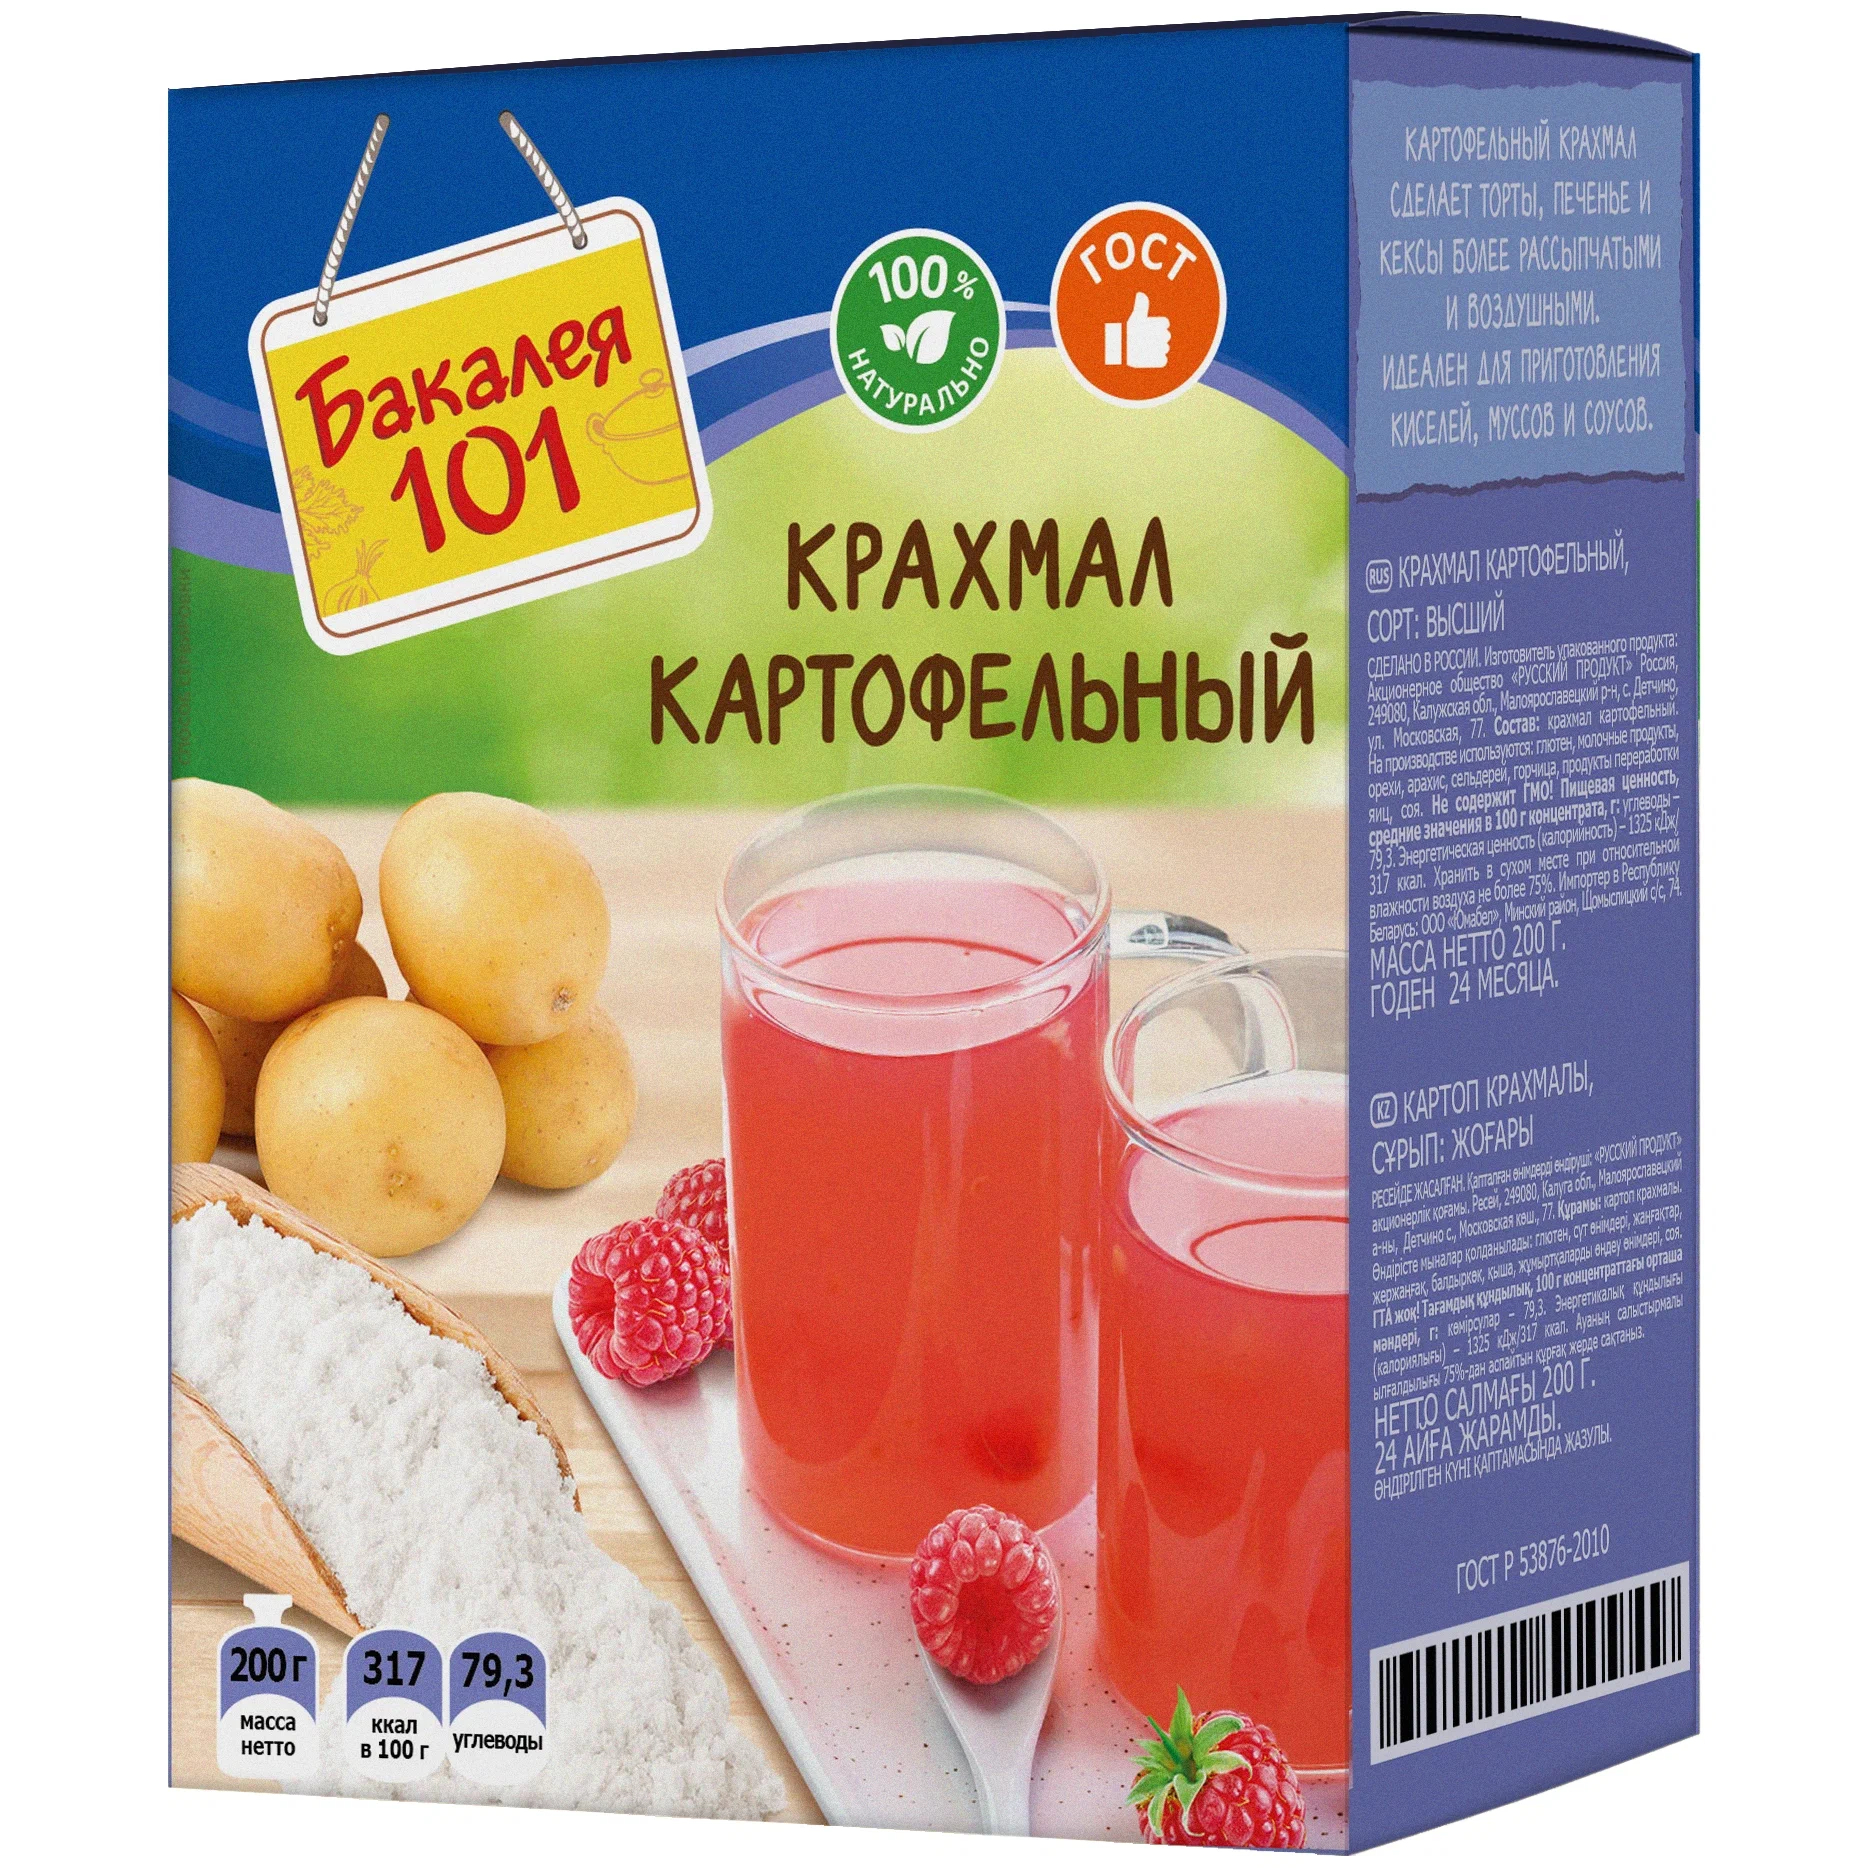 цена Крахмал картофельный Русский продукт Бакалея 101 200 г